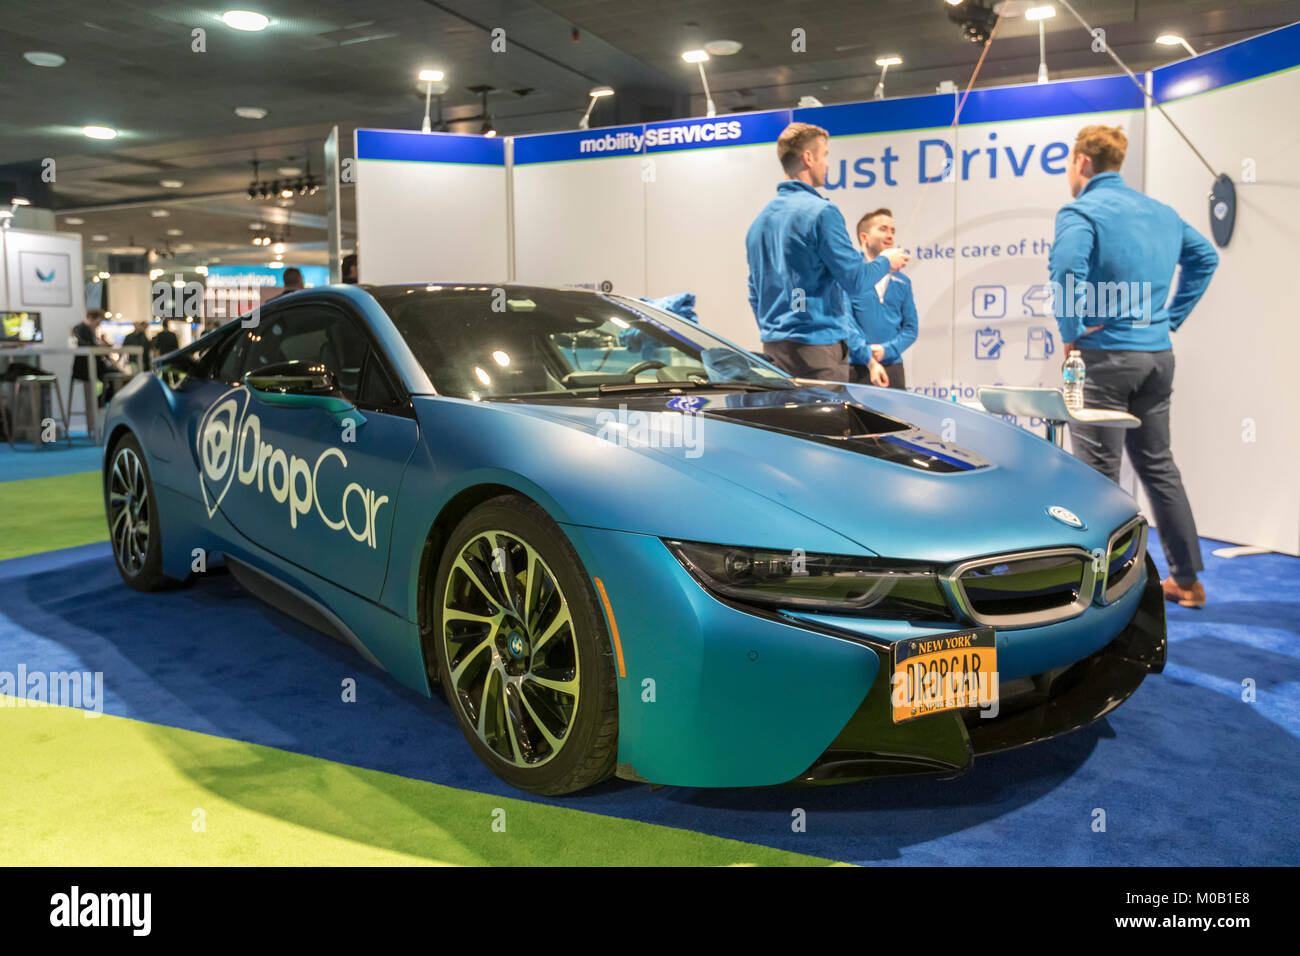 Detroit, Michigan - DropCar angezeigt sein valet Auto Service Konzept auf der North American International Auto Show. Das Unternehmen betreibt in Teilen von Ne Stockfoto